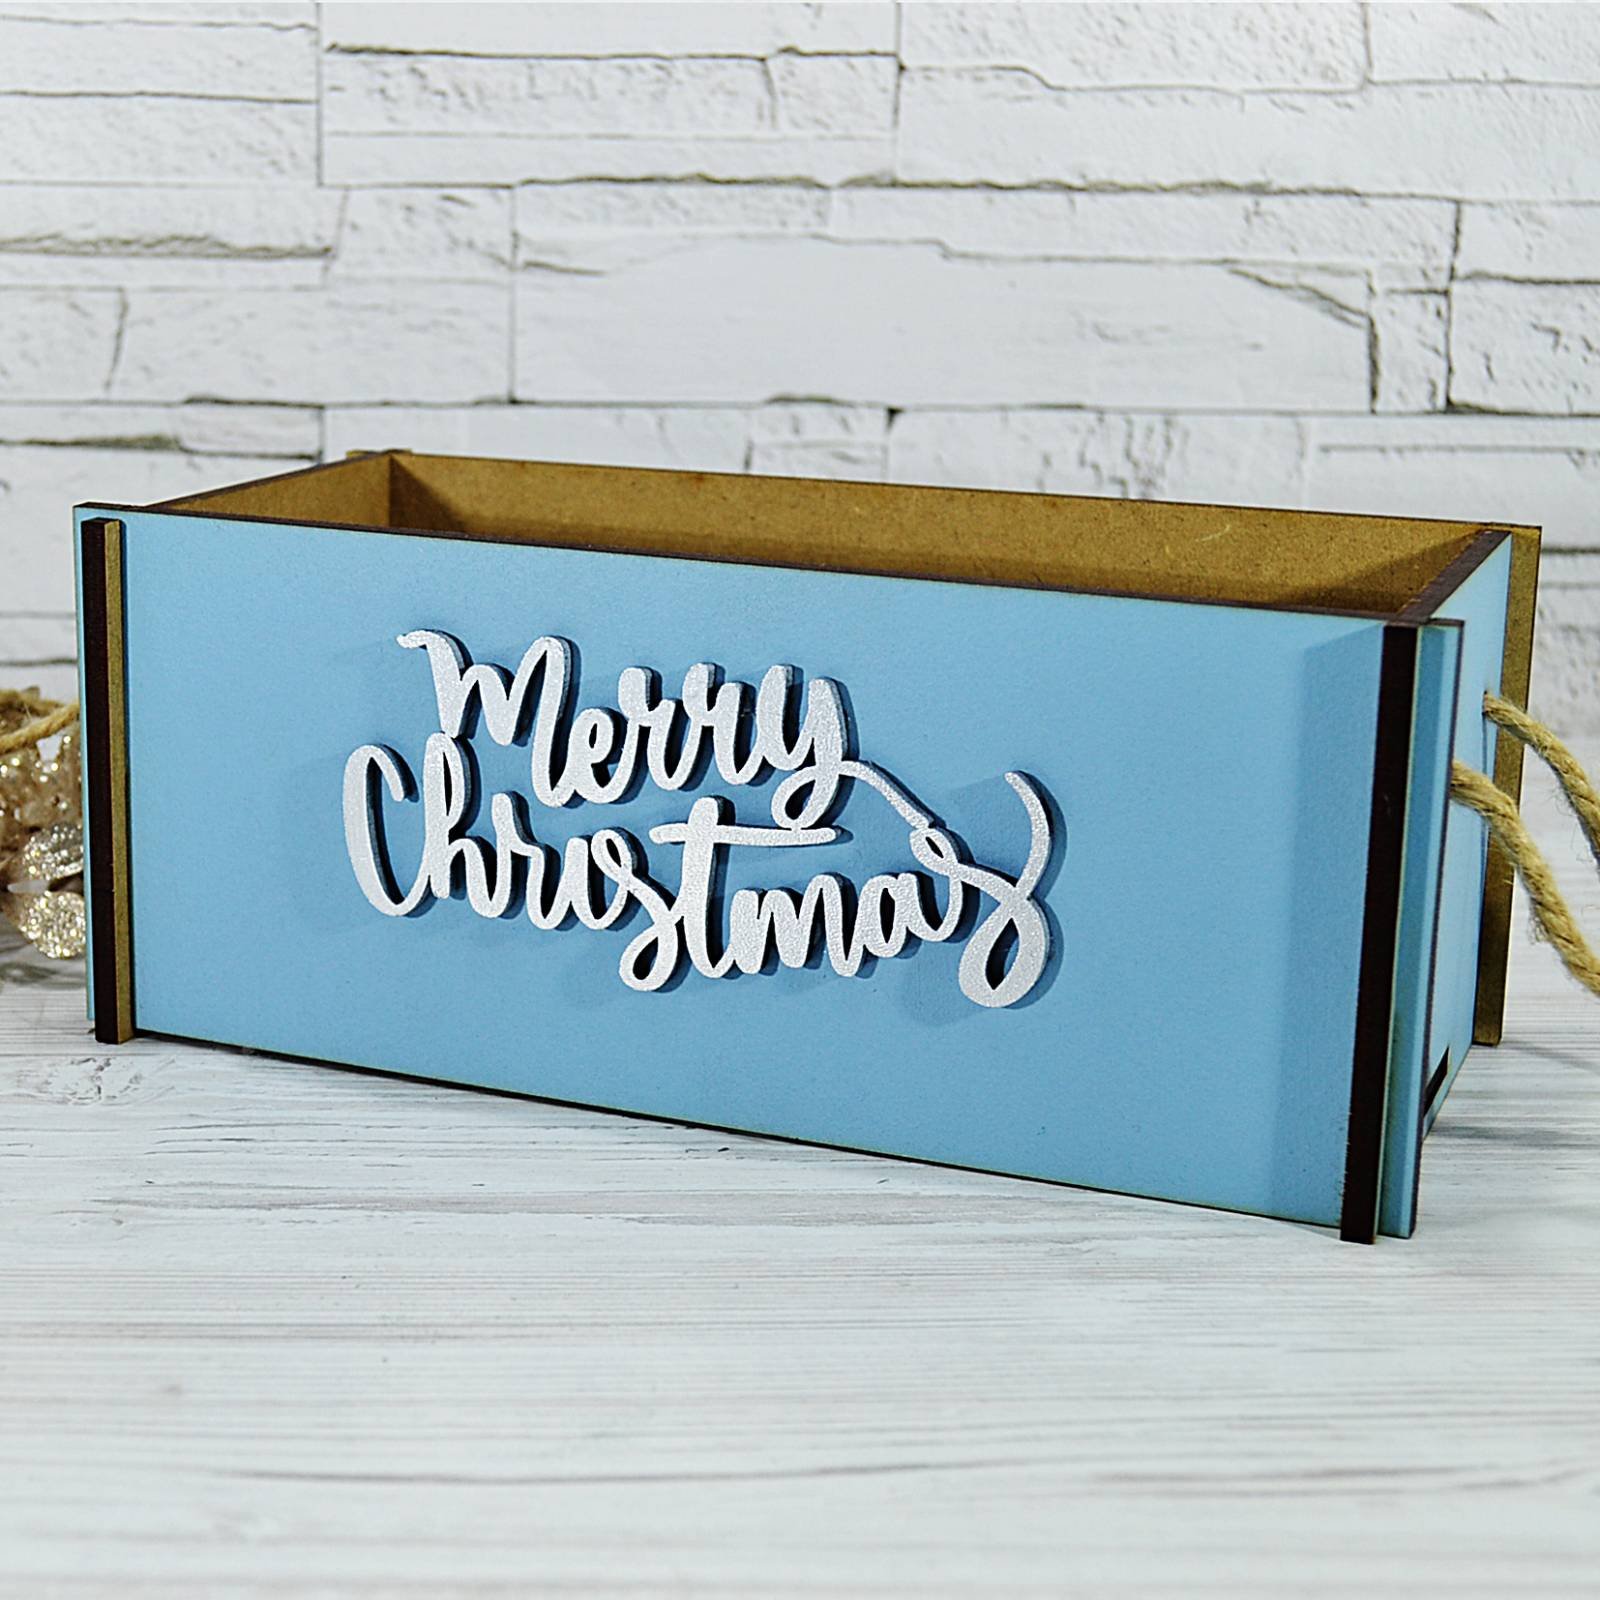 Коробочка дерев'яна, Merry Christmas, 12 см х 25 см, синя